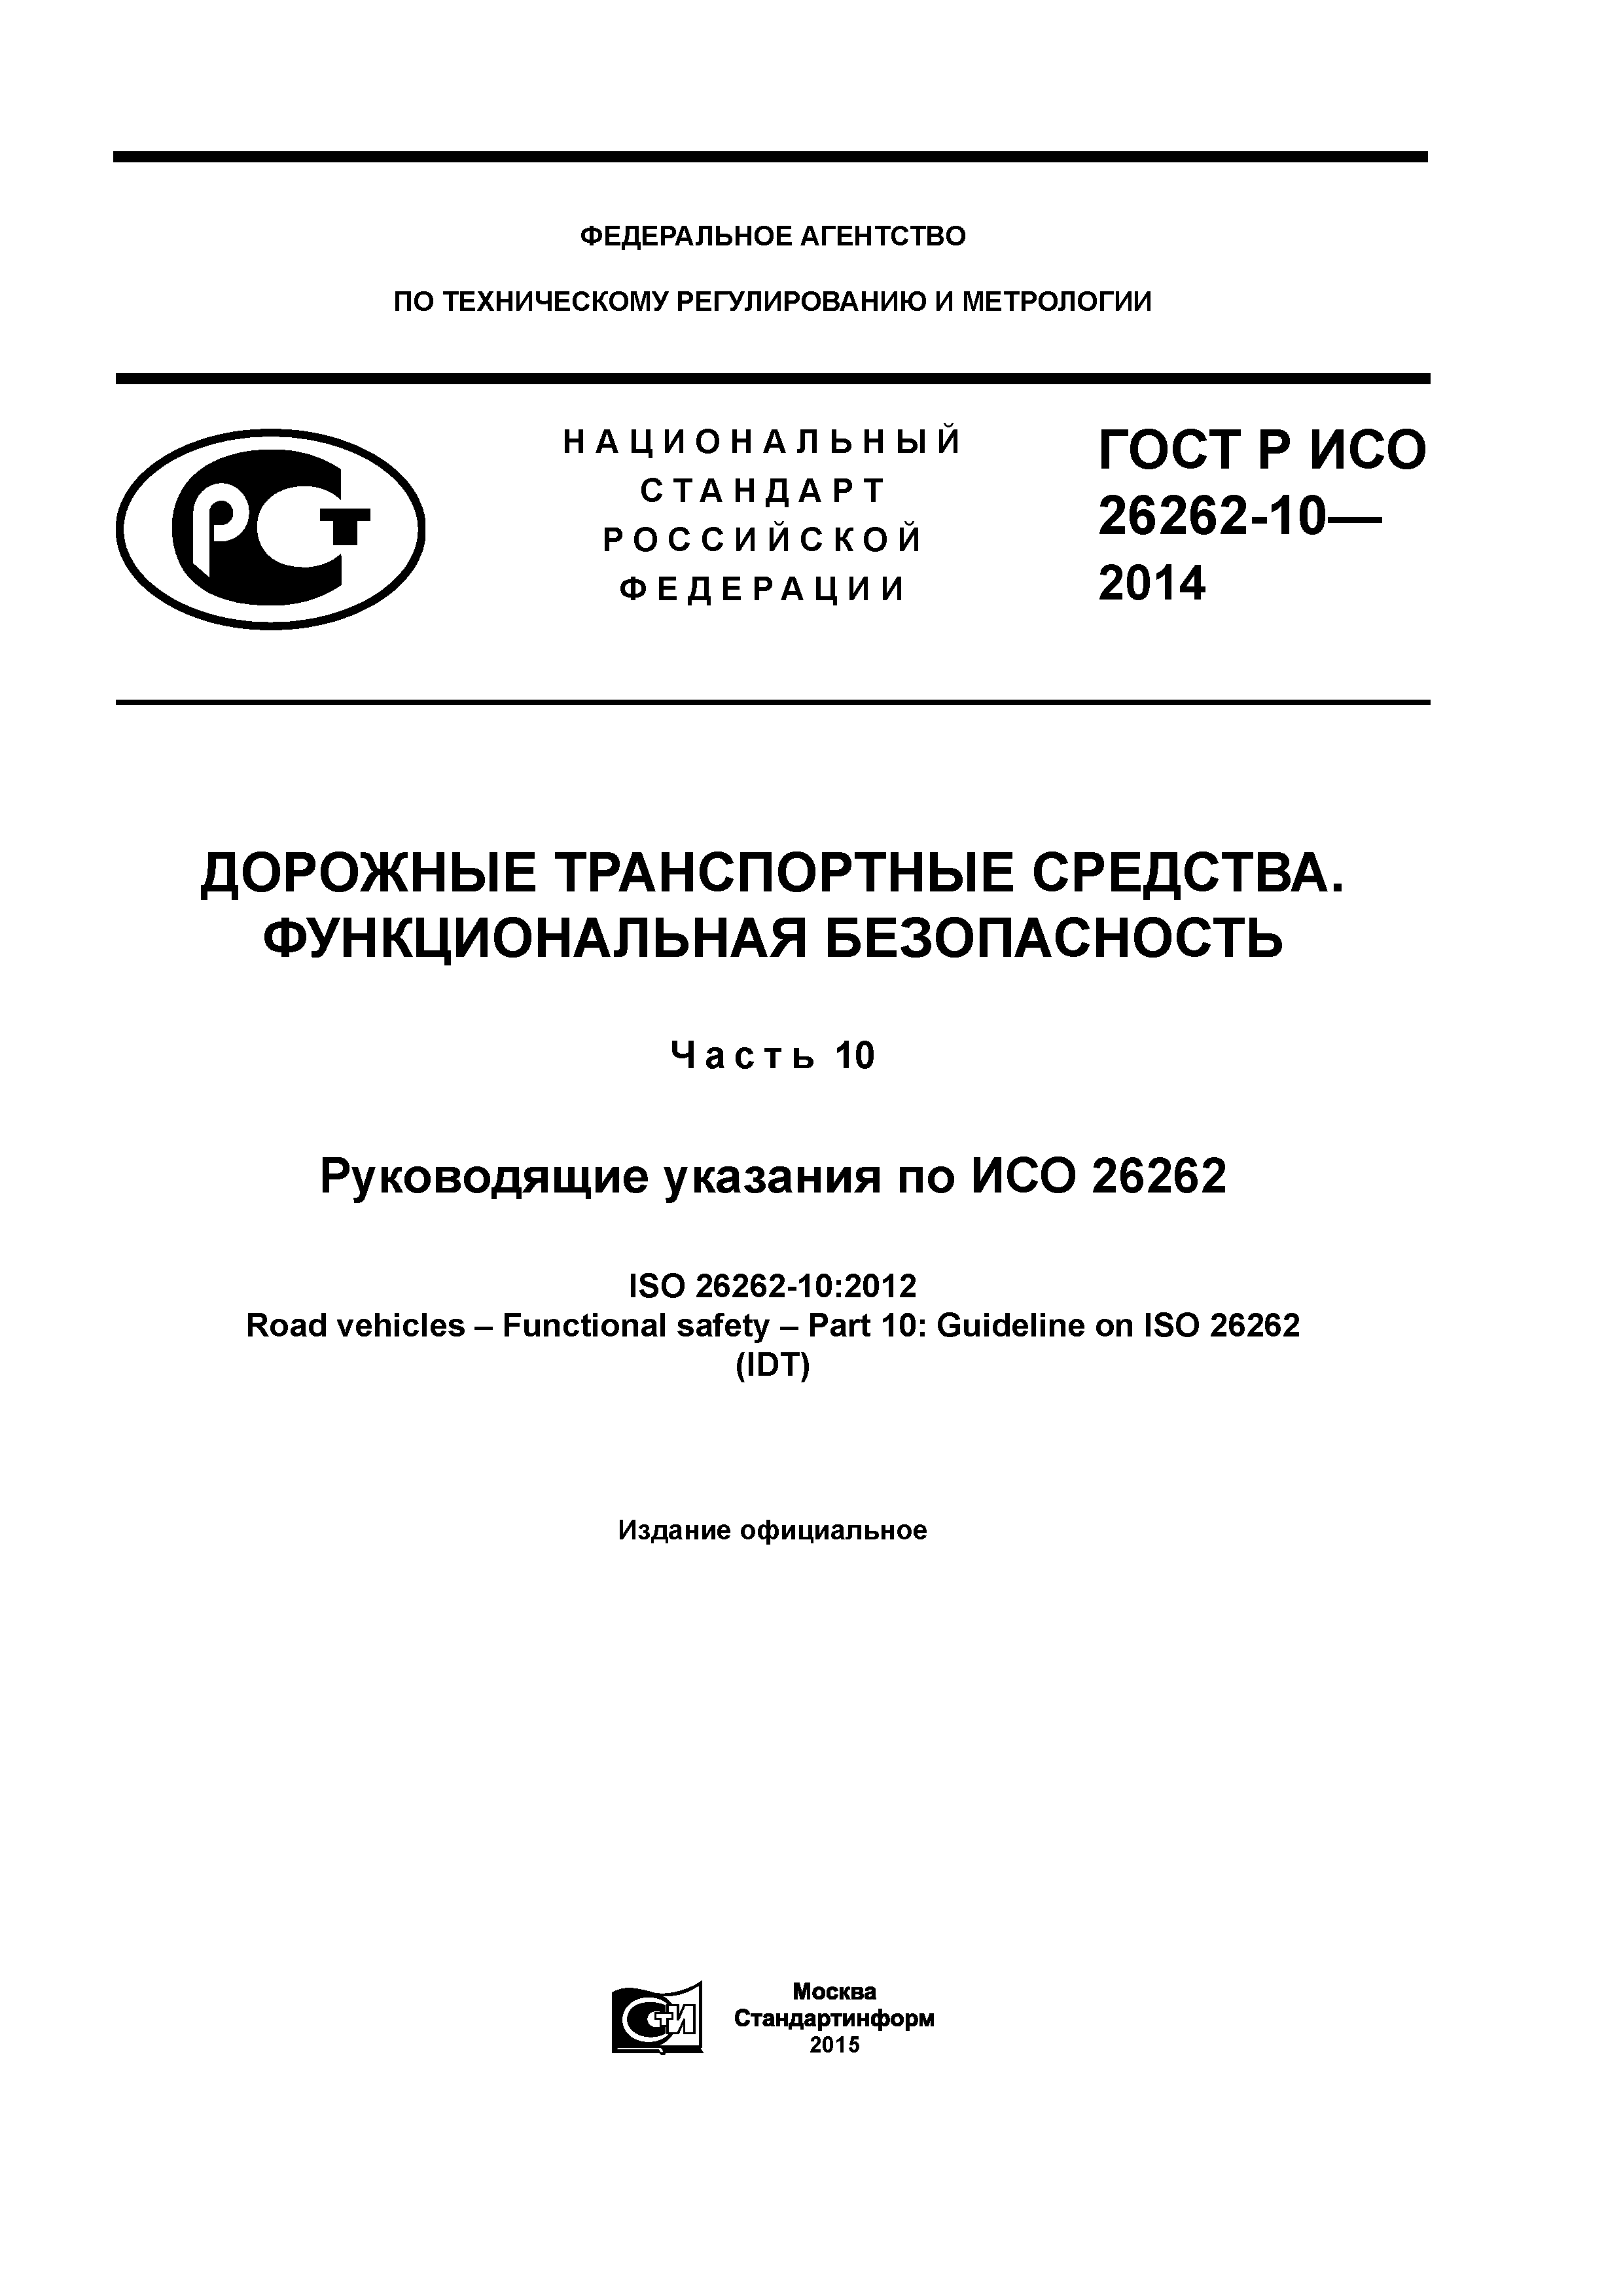 ГОСТ Р ИСО 26262-10-2014